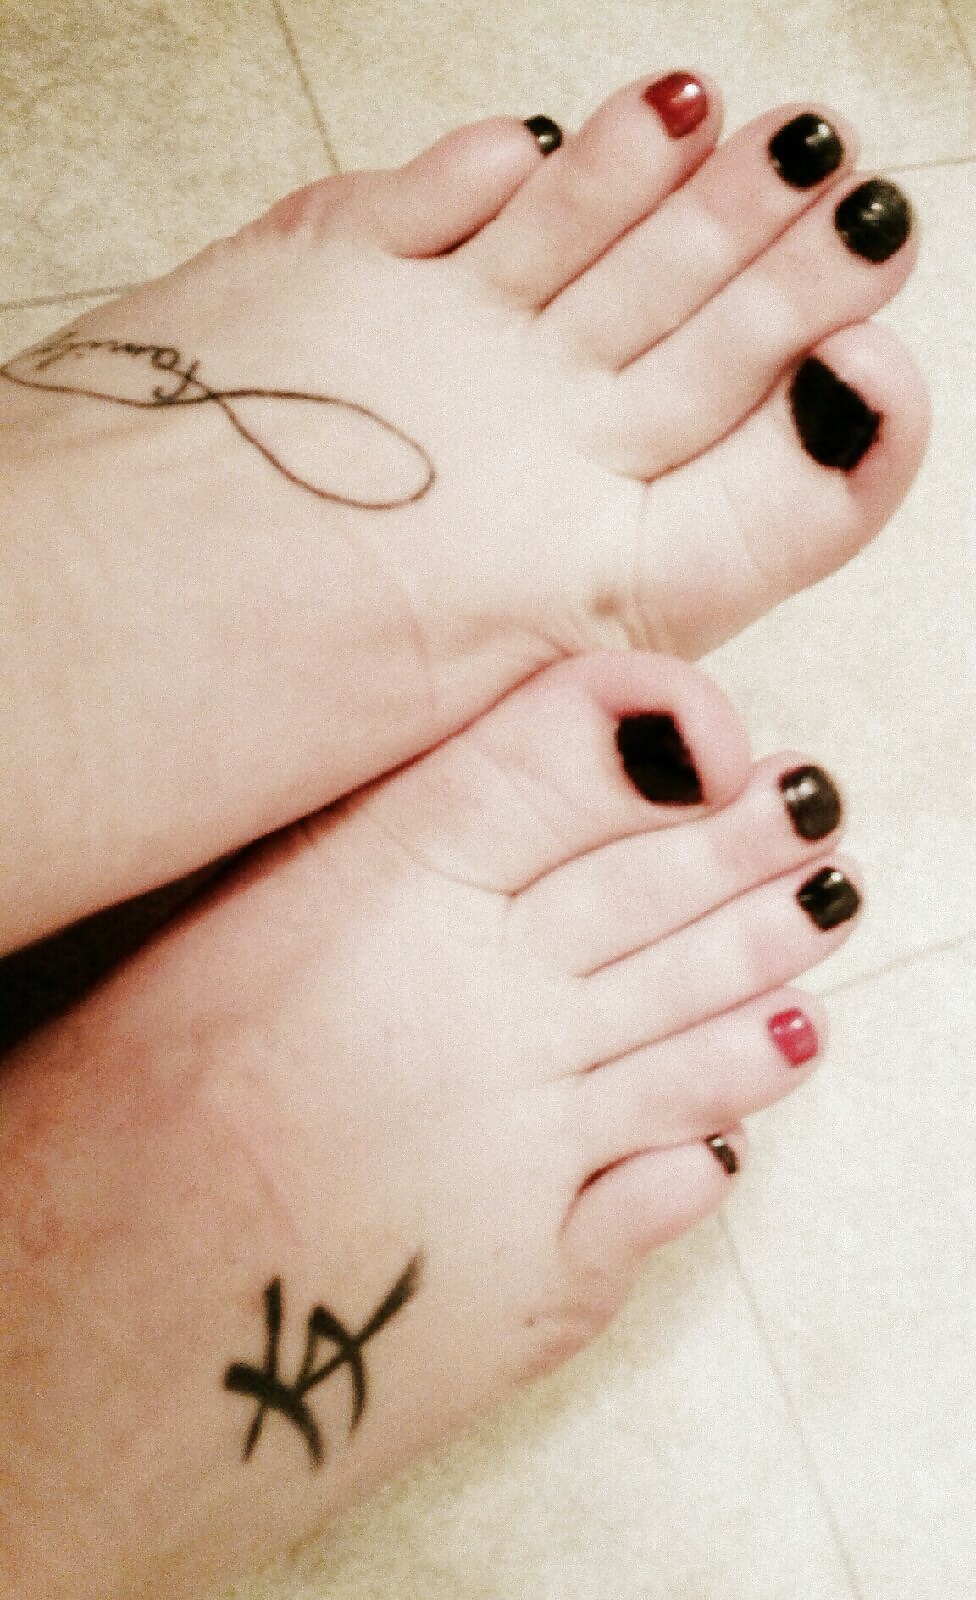 Feet of ex girlfriends #29536571